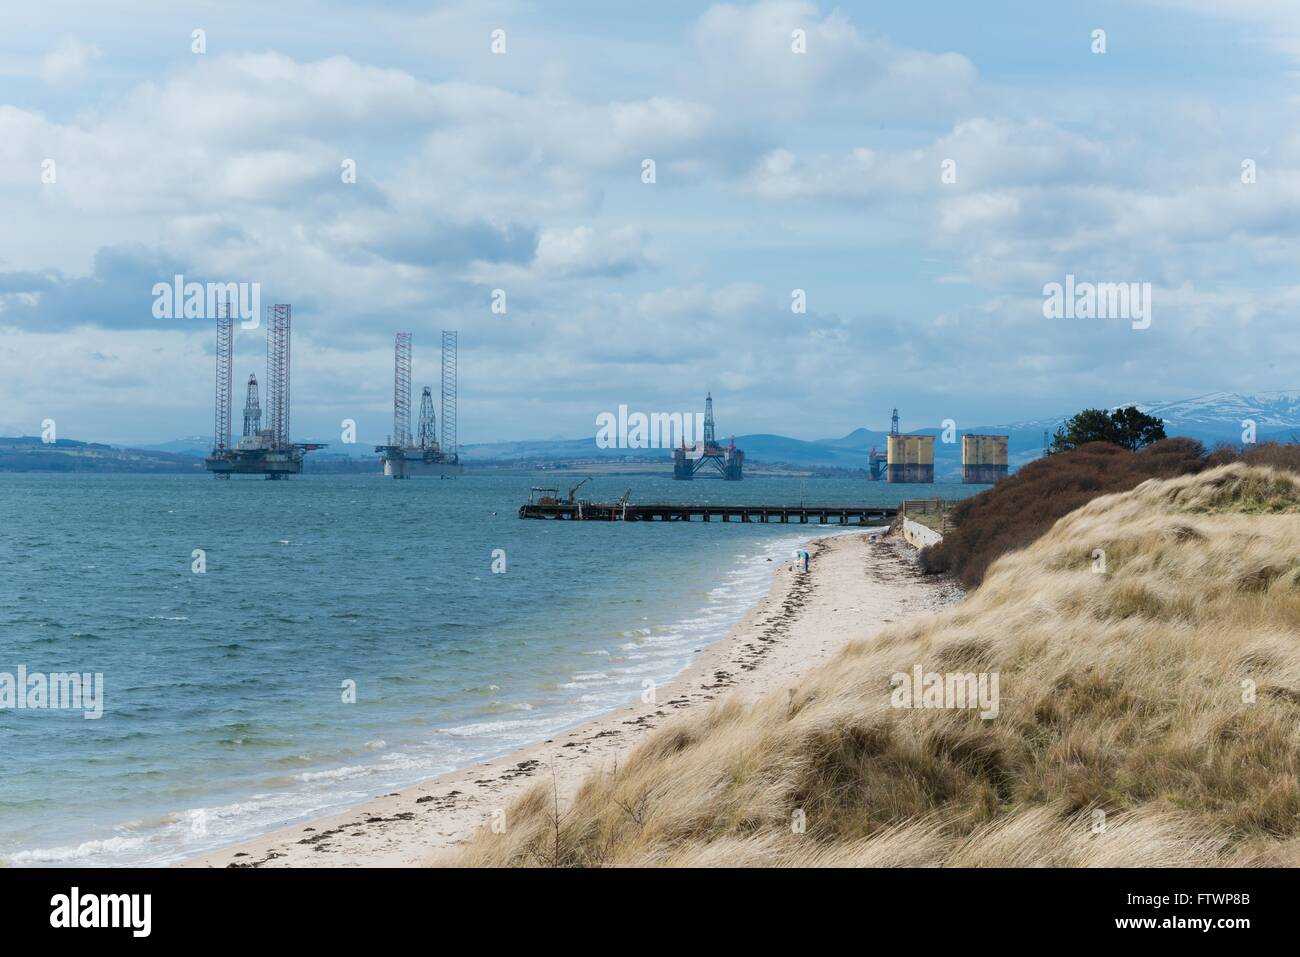 Vista de Cromarty Firth plataformas petrolíferas de nigg beach Foto de stock